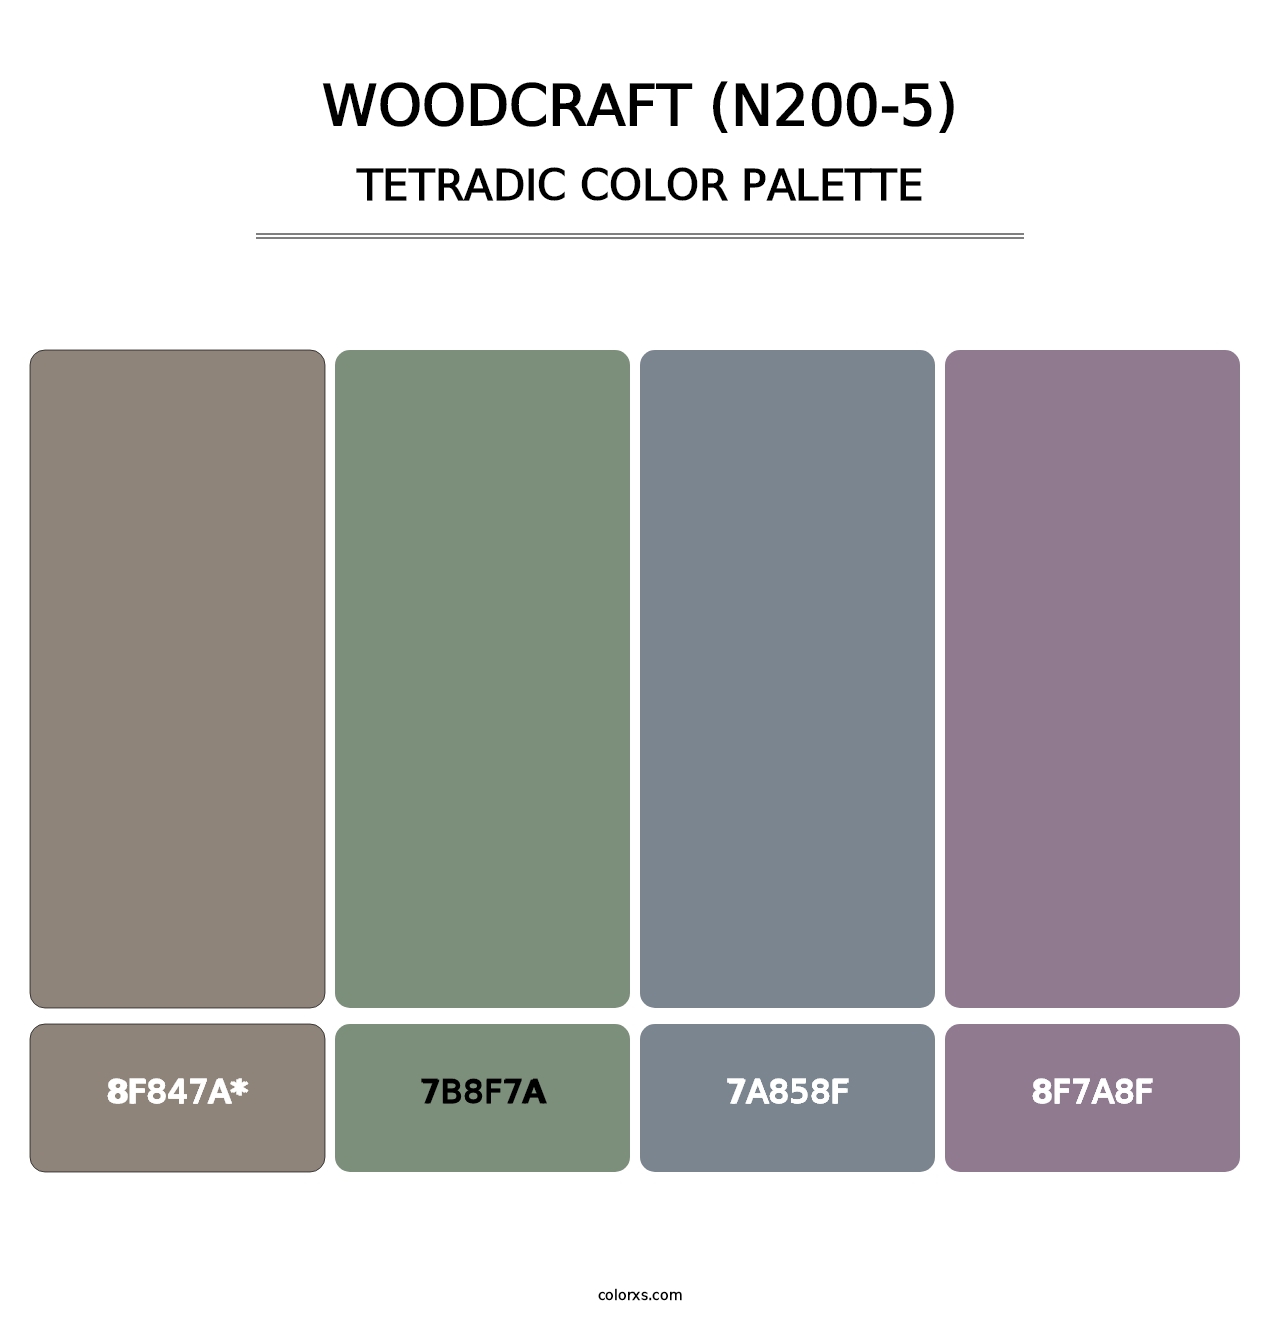 Woodcraft (N200-5) - Tetradic Color Palette